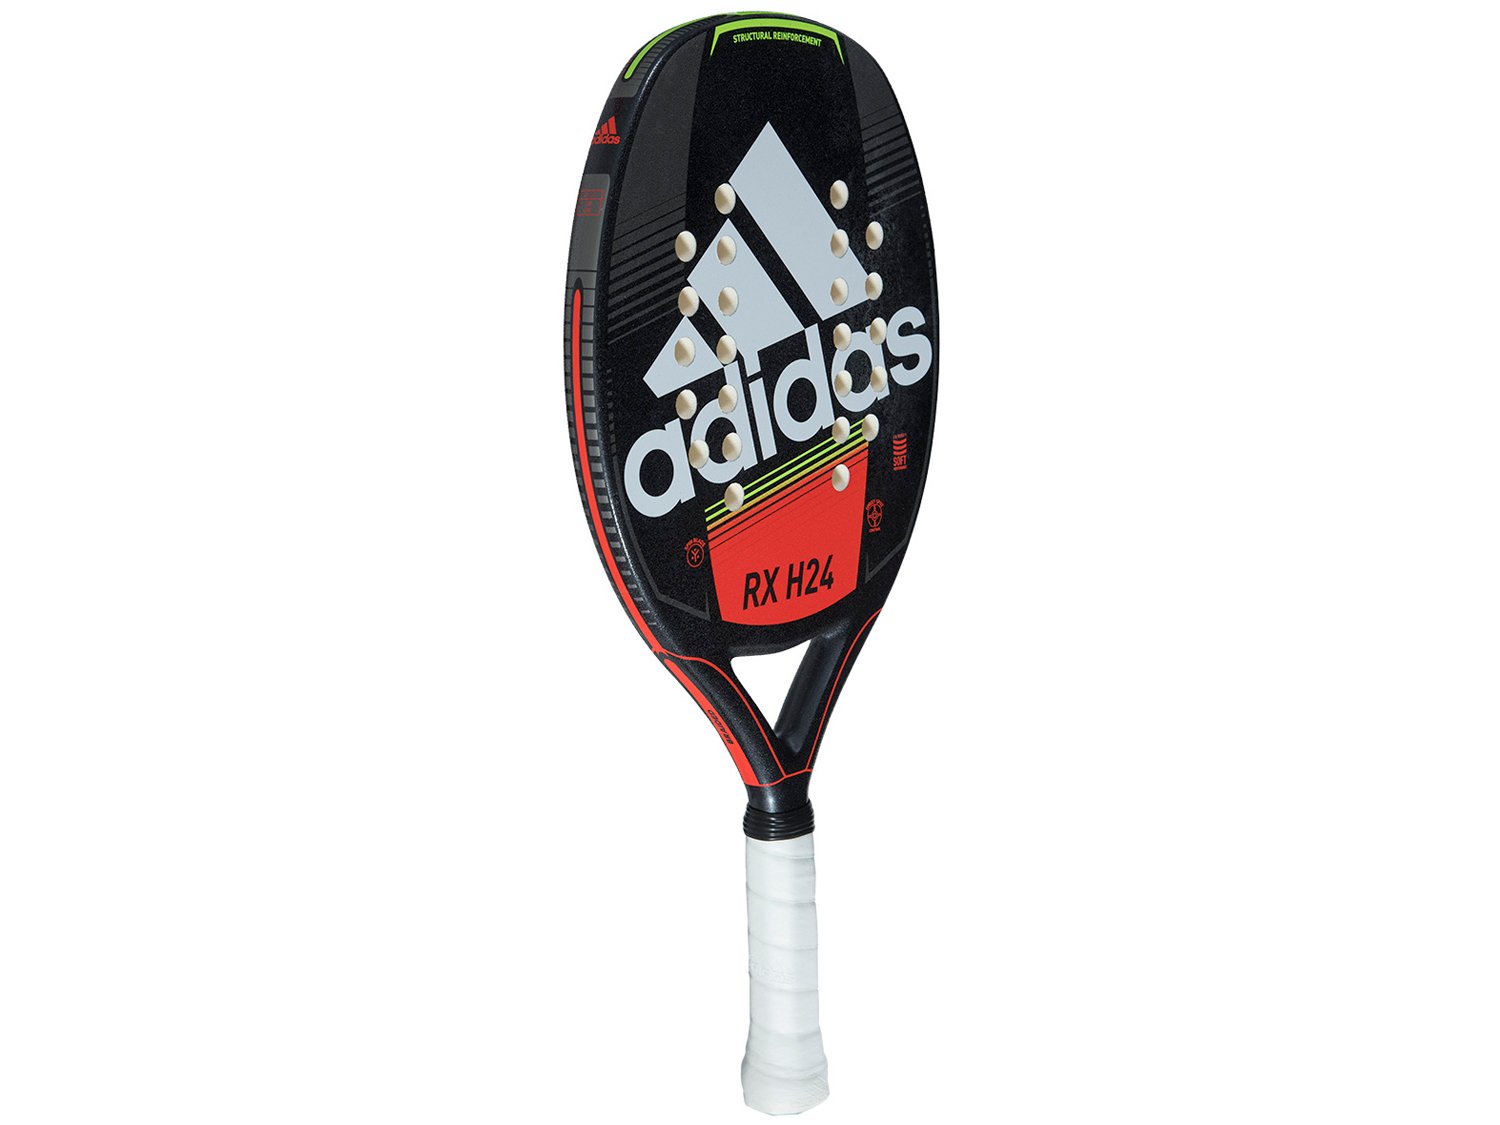 Raquete de Beach Tennis Adidas Rx H24 c/ Sacola Gym Sack - 1